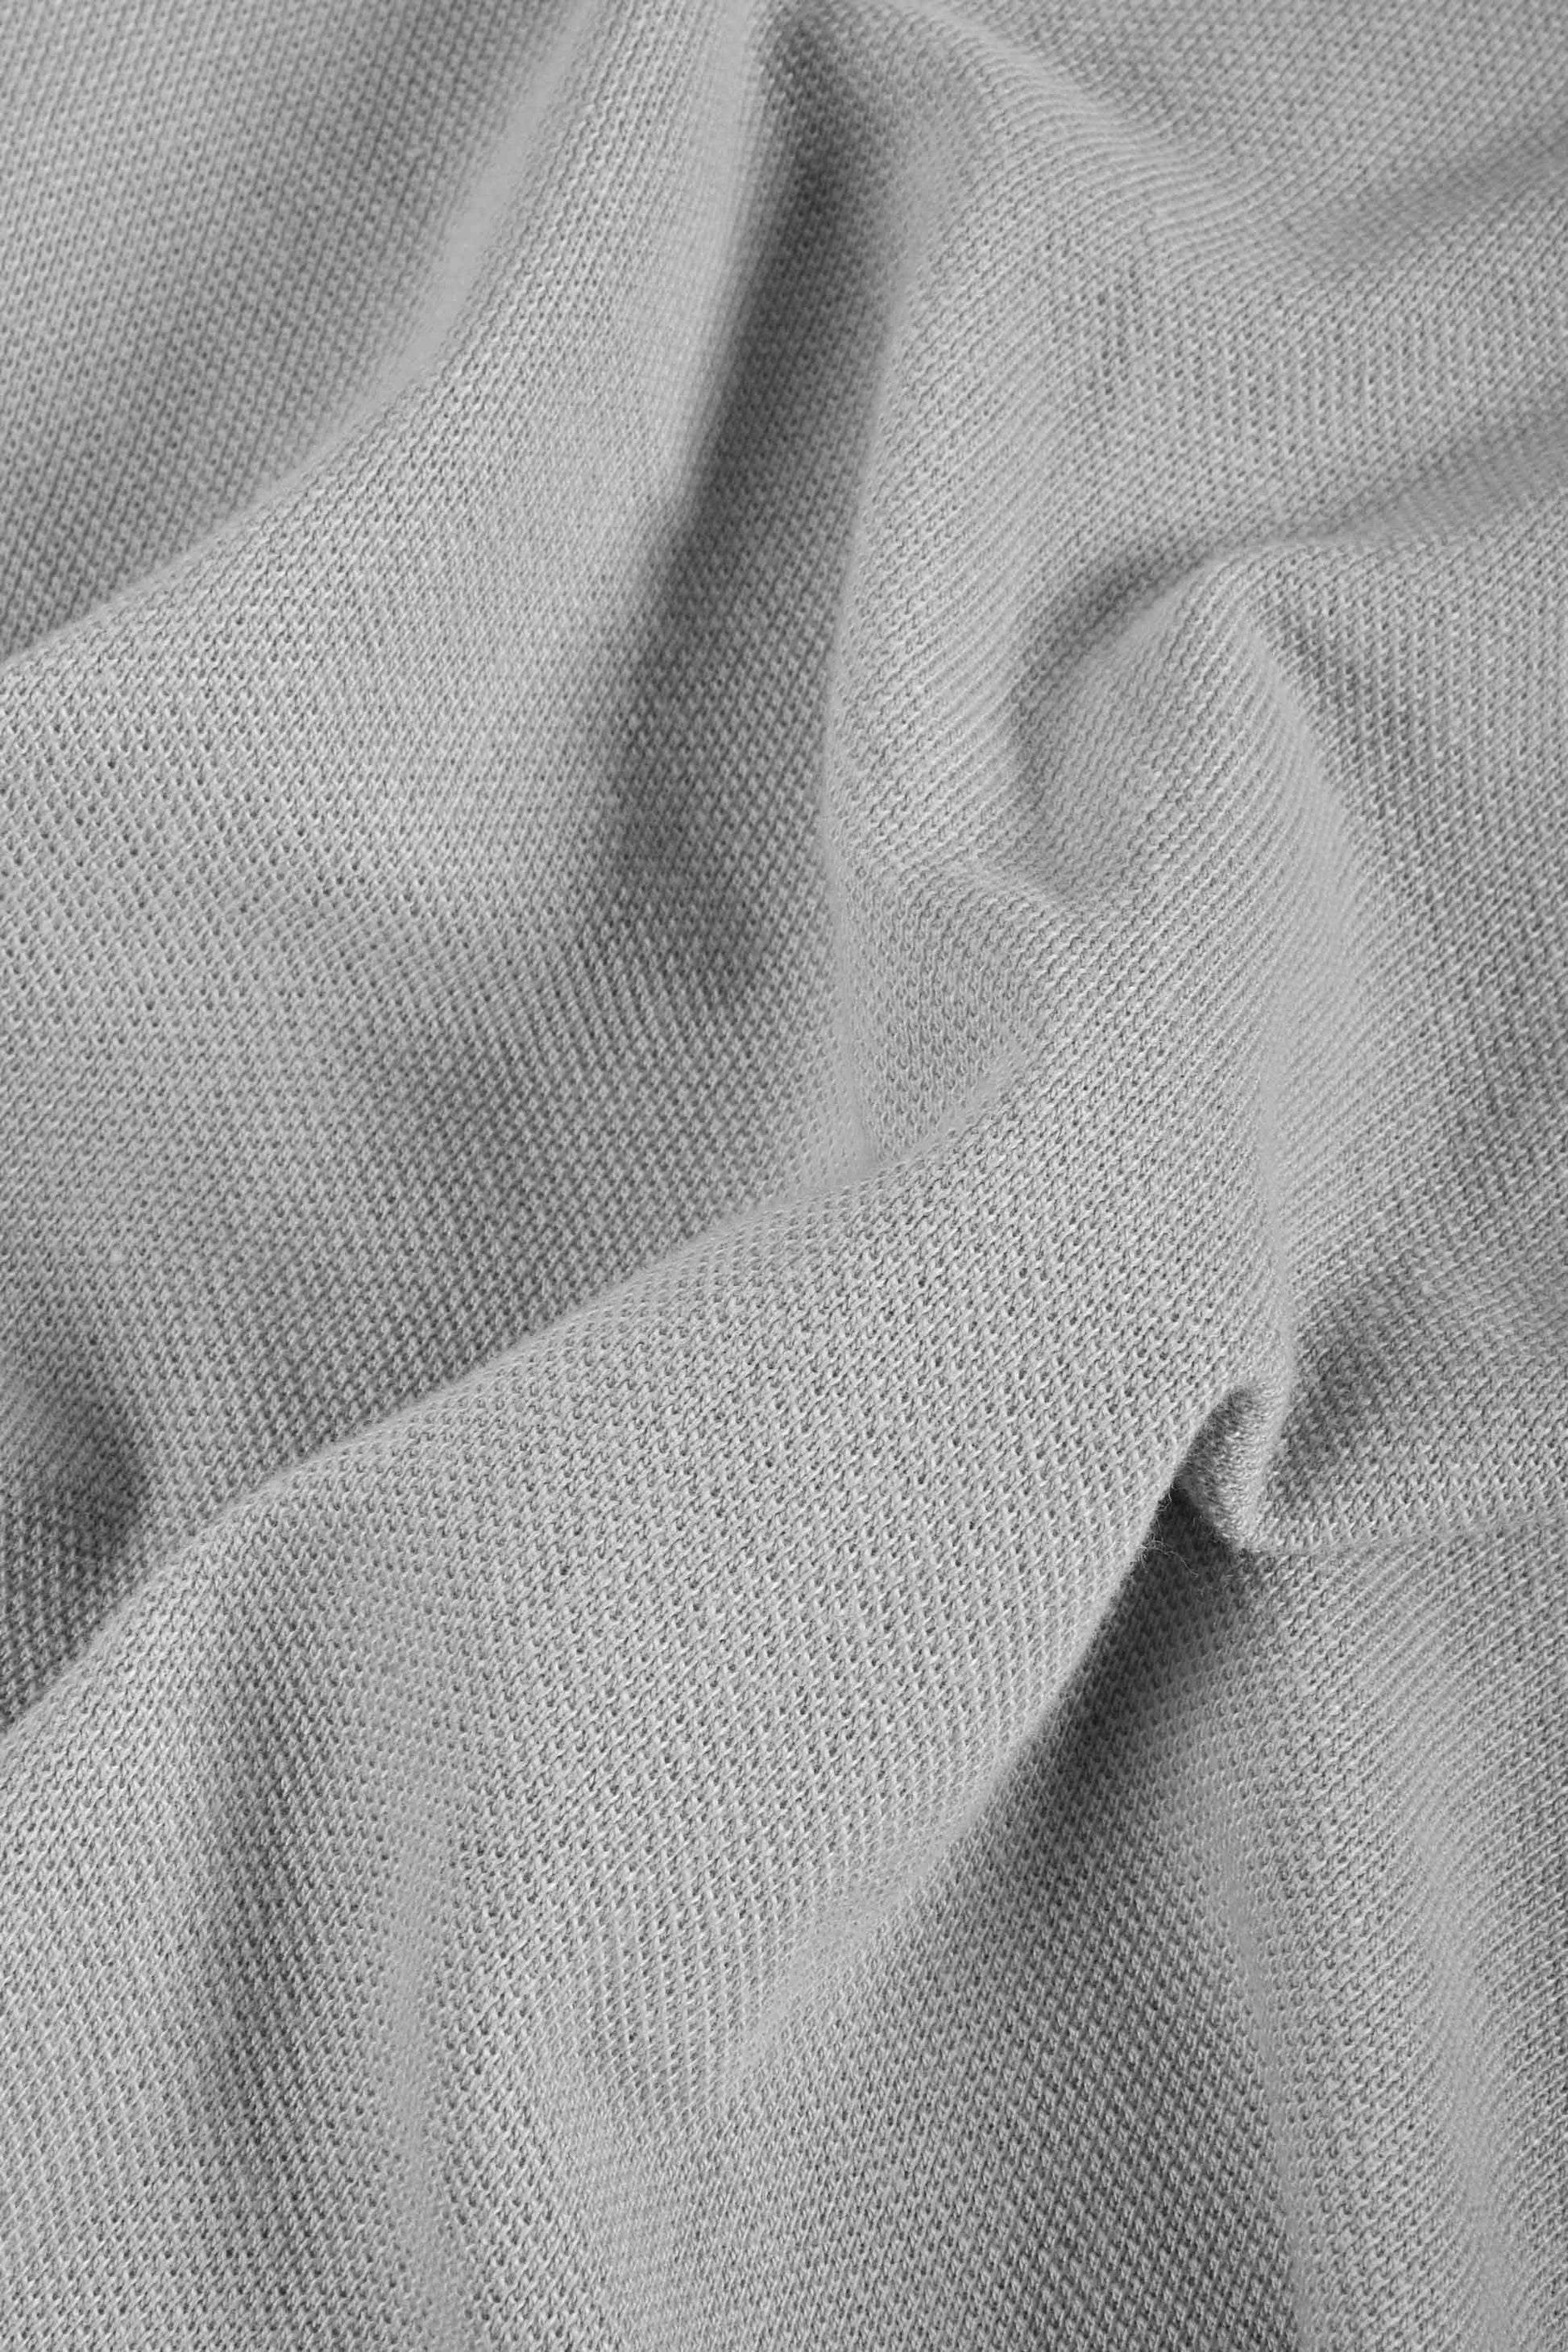 Polo Republica Men's Cubs 01 Embroidered Short Sleeve Polo Shirt